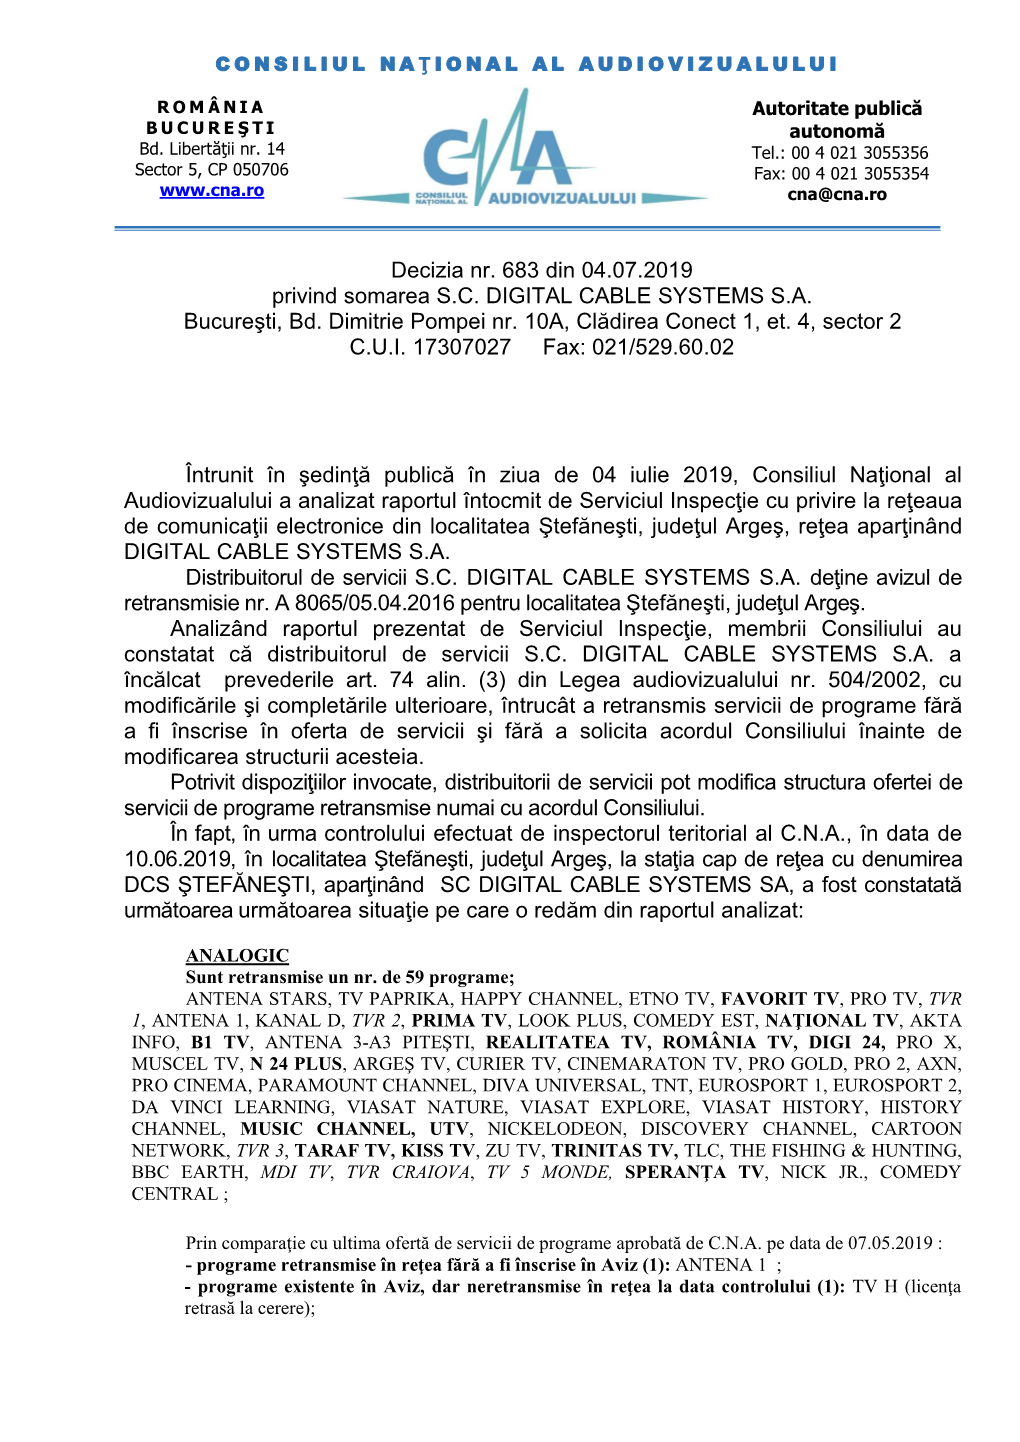 Decizia Nr. 683 Din 04.07.2019 Privind Somarea S.C. DIGITAL CABLE SYSTEMS S.A. Bucureşti, Bd. Dimitrie Pompei Nr. 10A, Clădirea Conect 1, Et